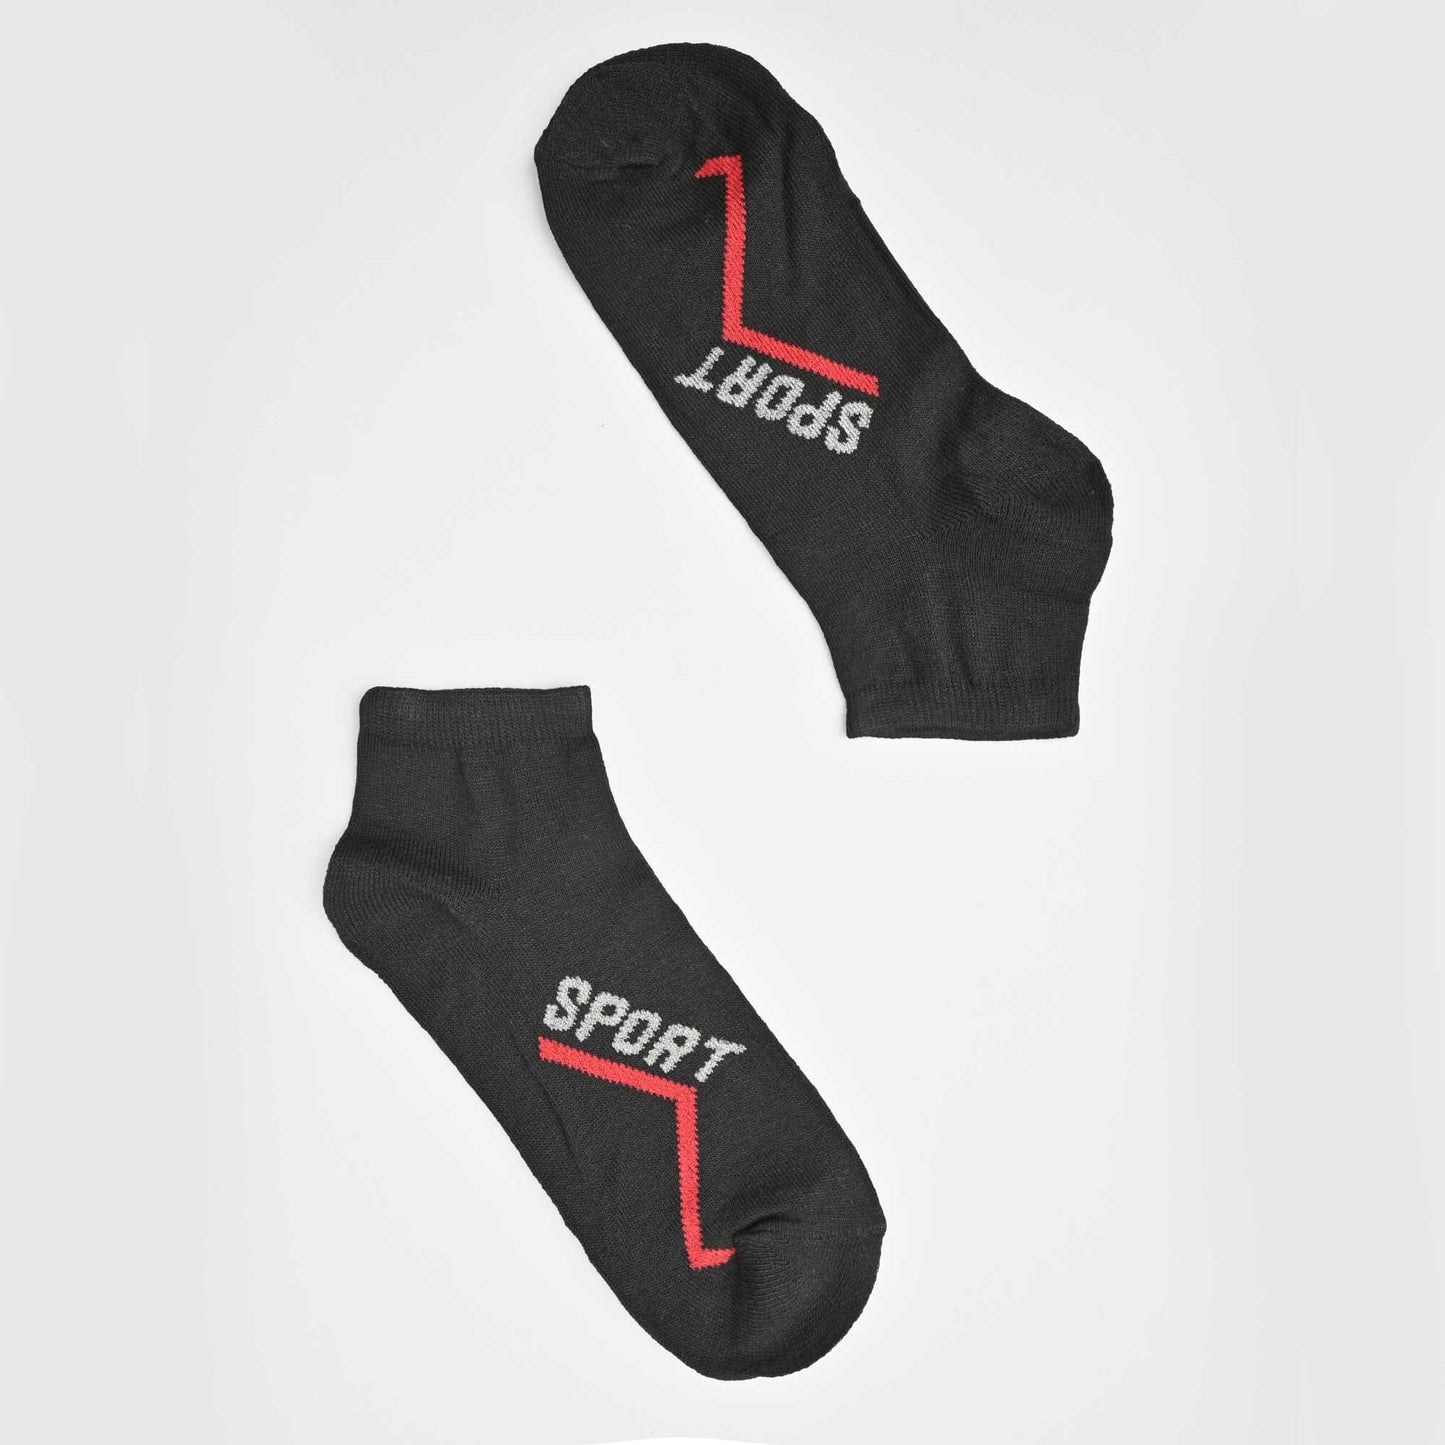 Men's Classic Ankle Socks Socks RAM EUR 38-43 D19 